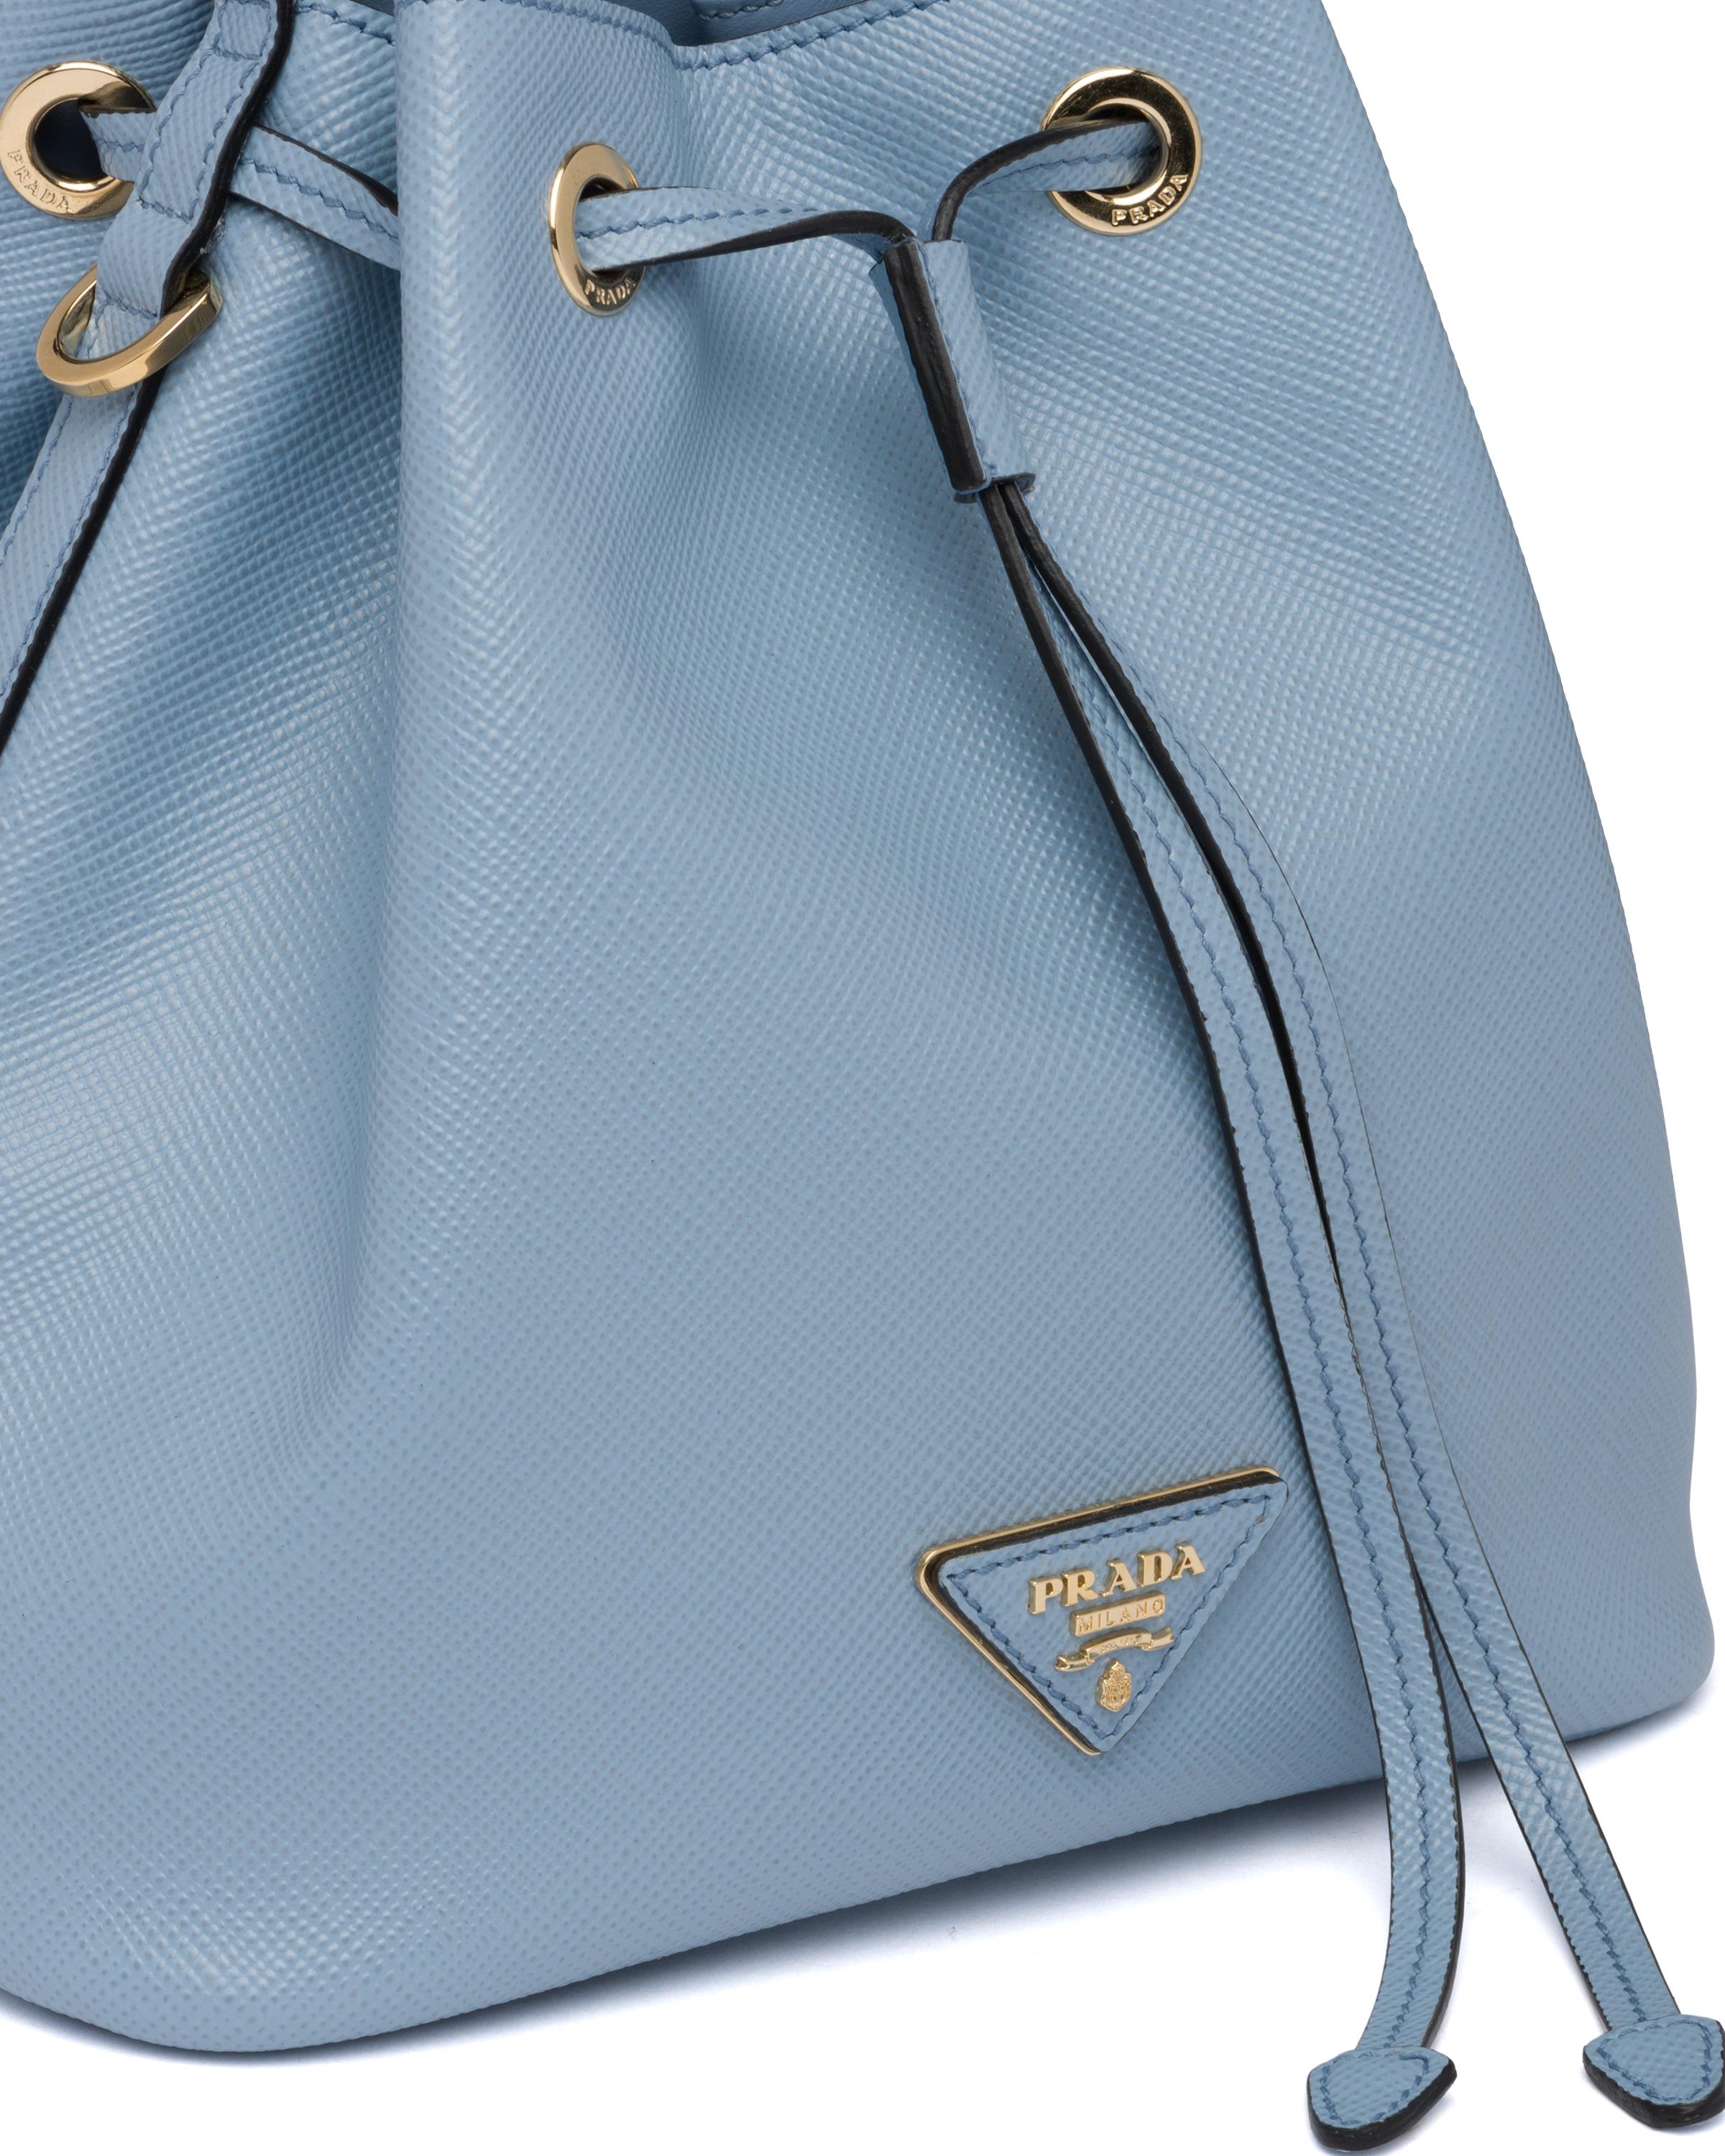 Prada Saffiano Leather Bucket Bag in Blue | Lyst